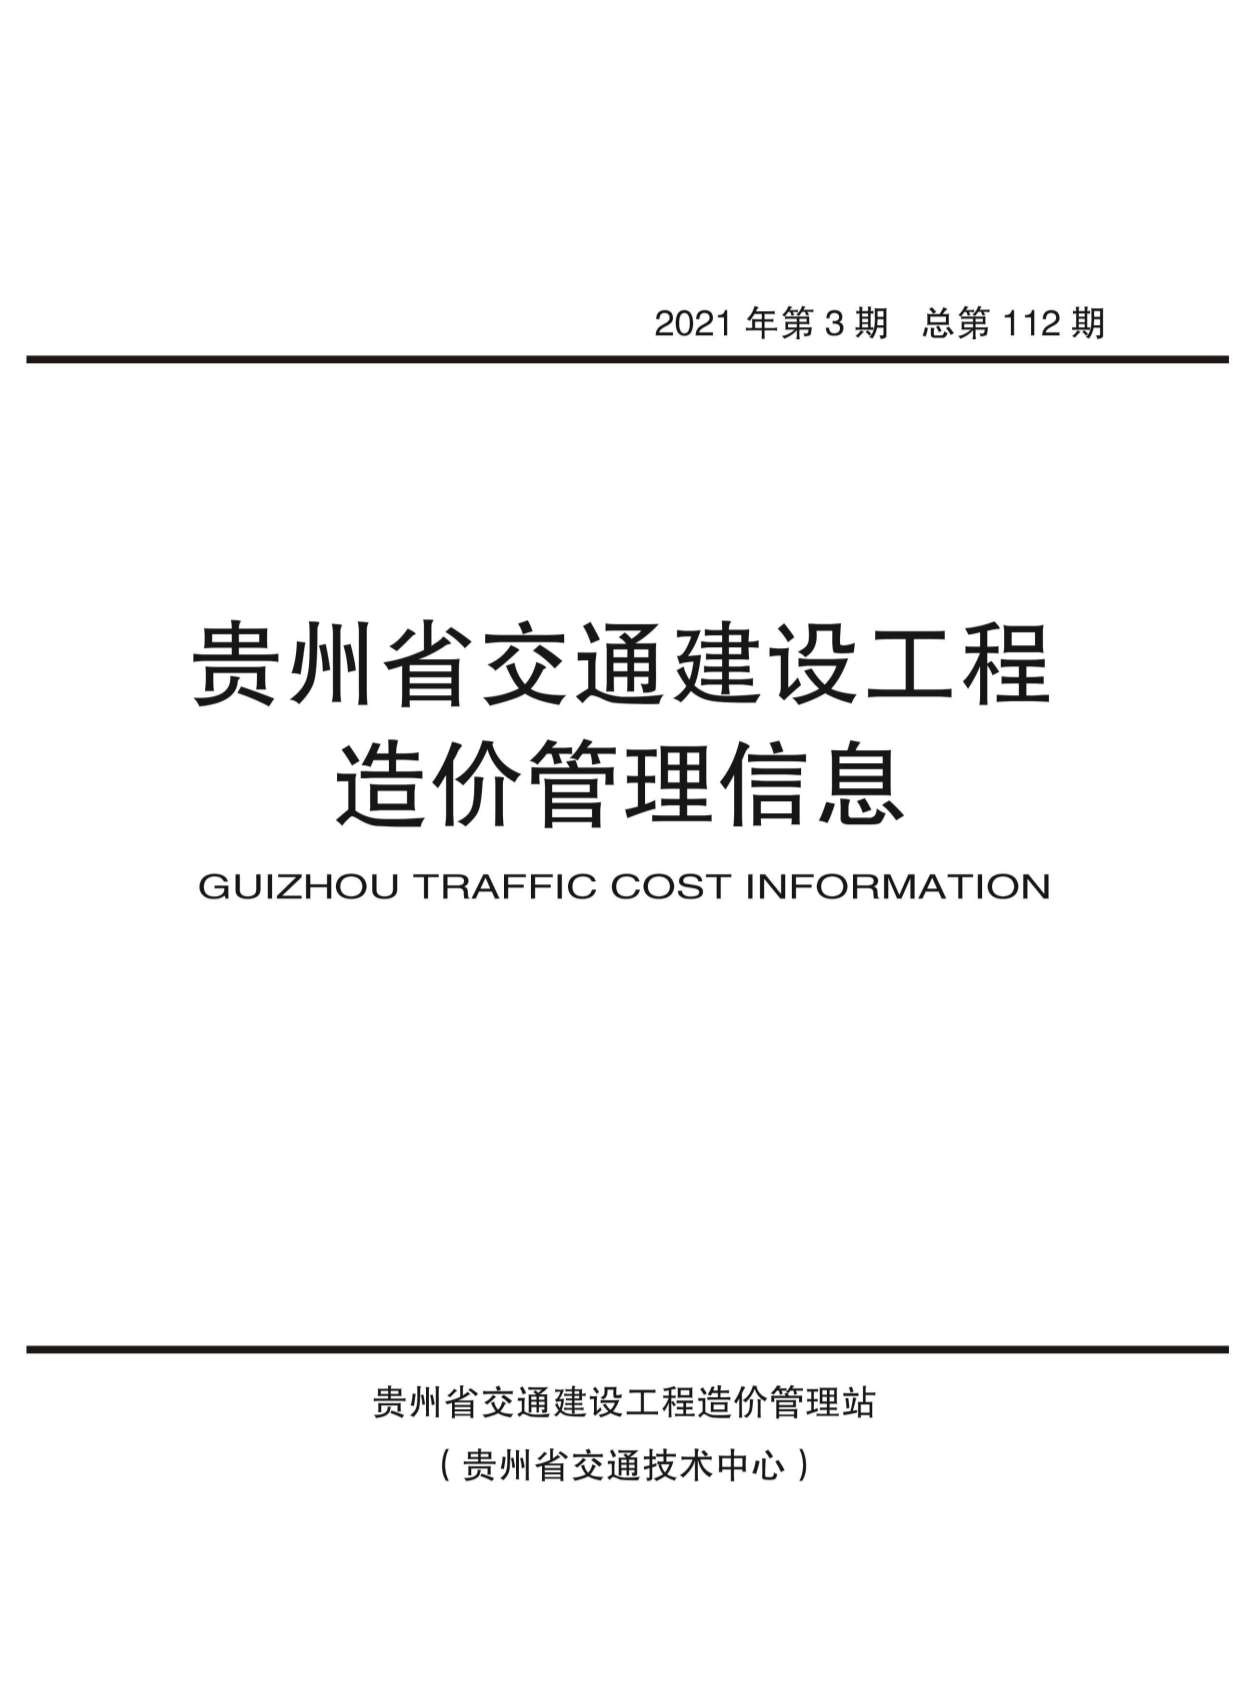 贵州省2021年3月交通公路信息价